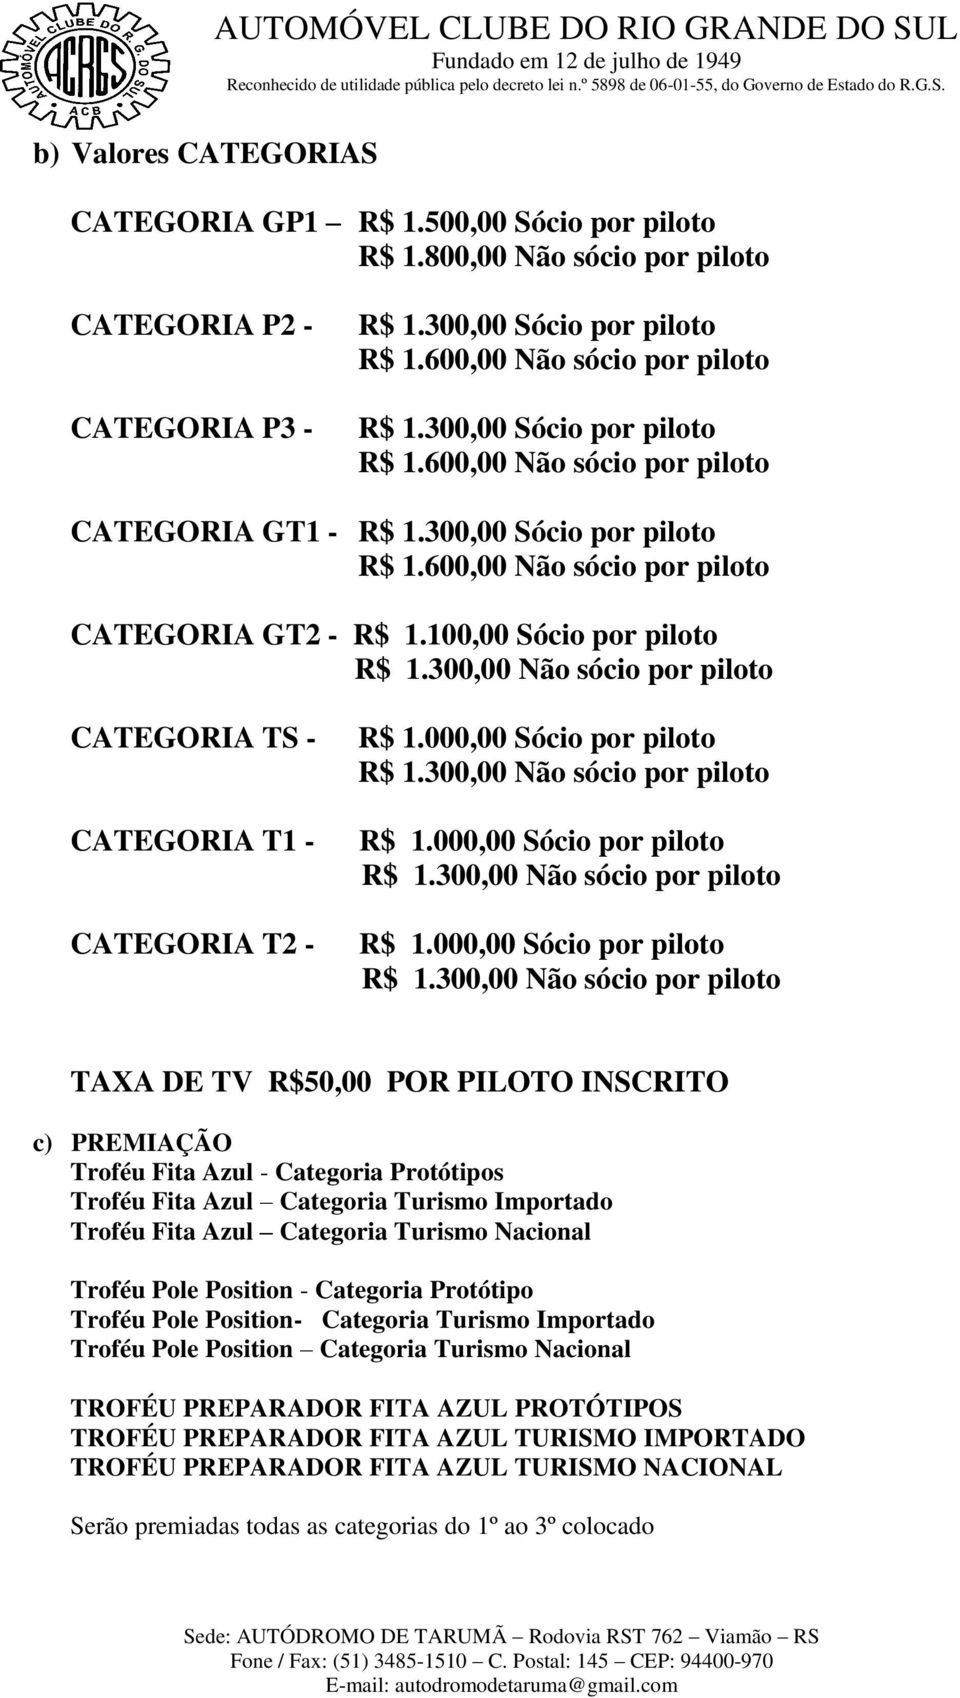 100,00 Sócio por piloto R$ 1.300,00 Não sócio por piloto CATEGORIA TS - CATEGORIA T1 - CATEGORIA T2 - R$ 1.000,00 Sócio por piloto R$ 1.